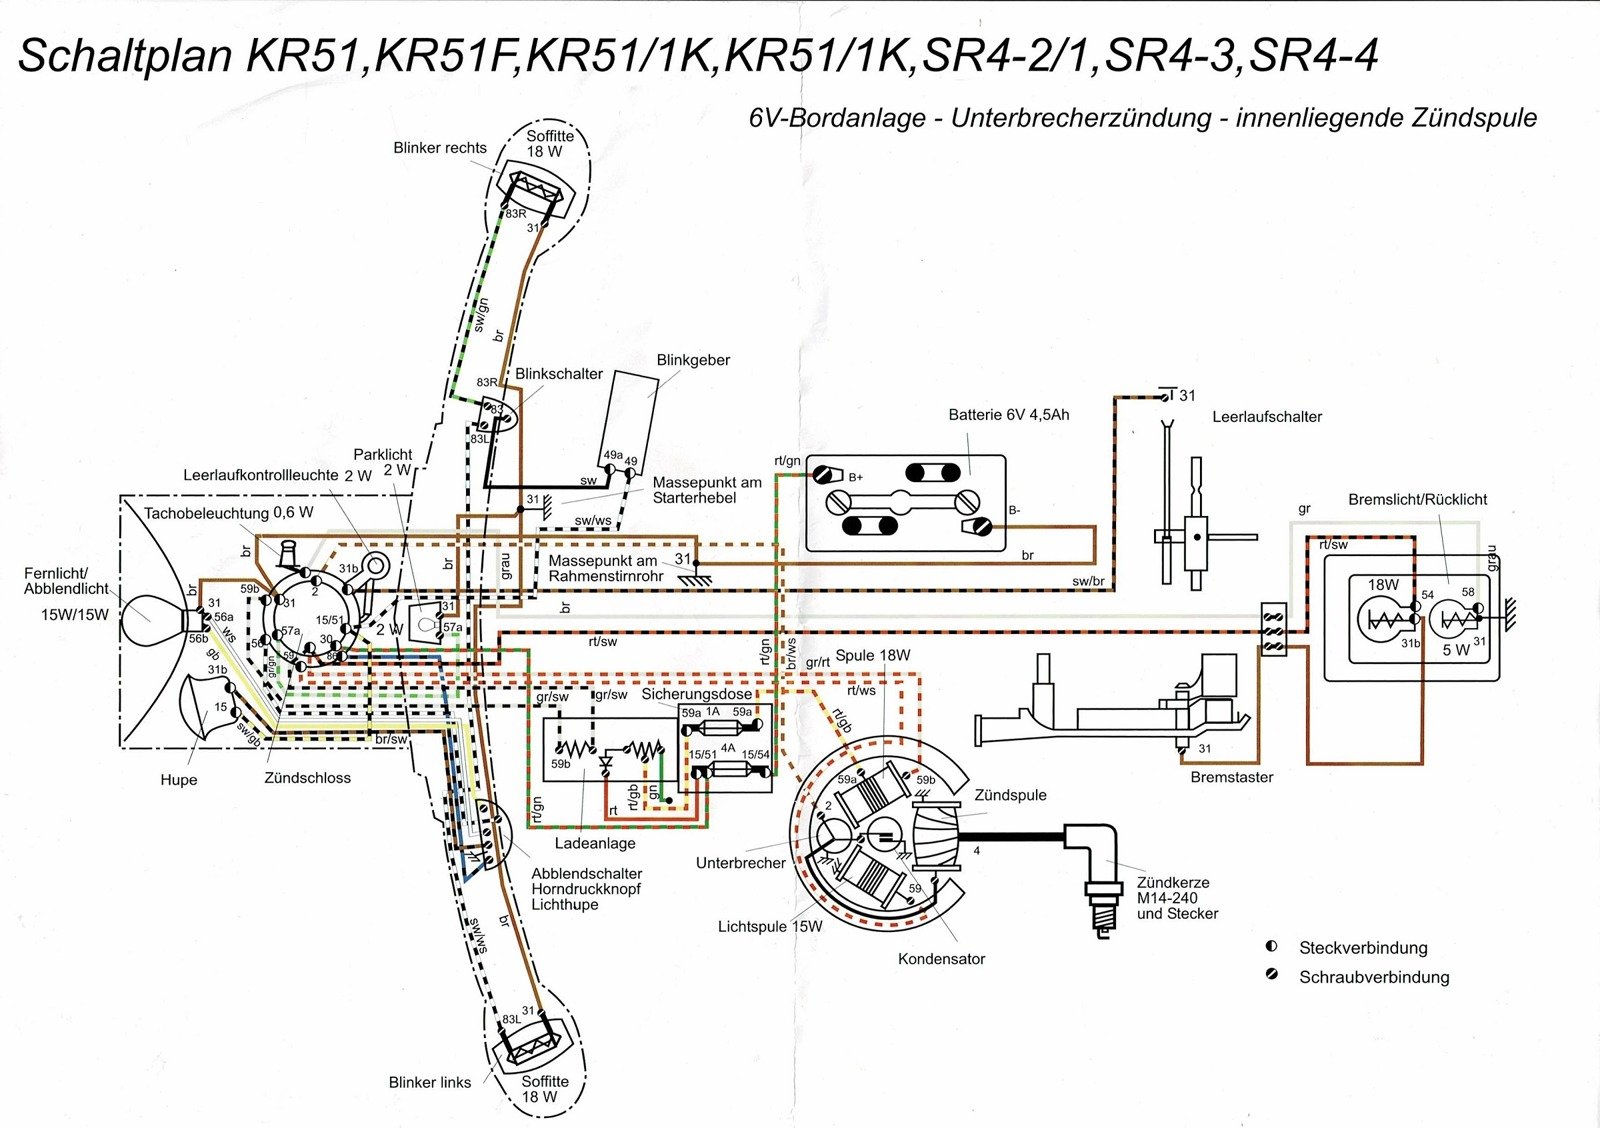 Basisausstattung mit Schaltplan für Simson KR51 Schwalbe Kabelbaumset SR4-2 